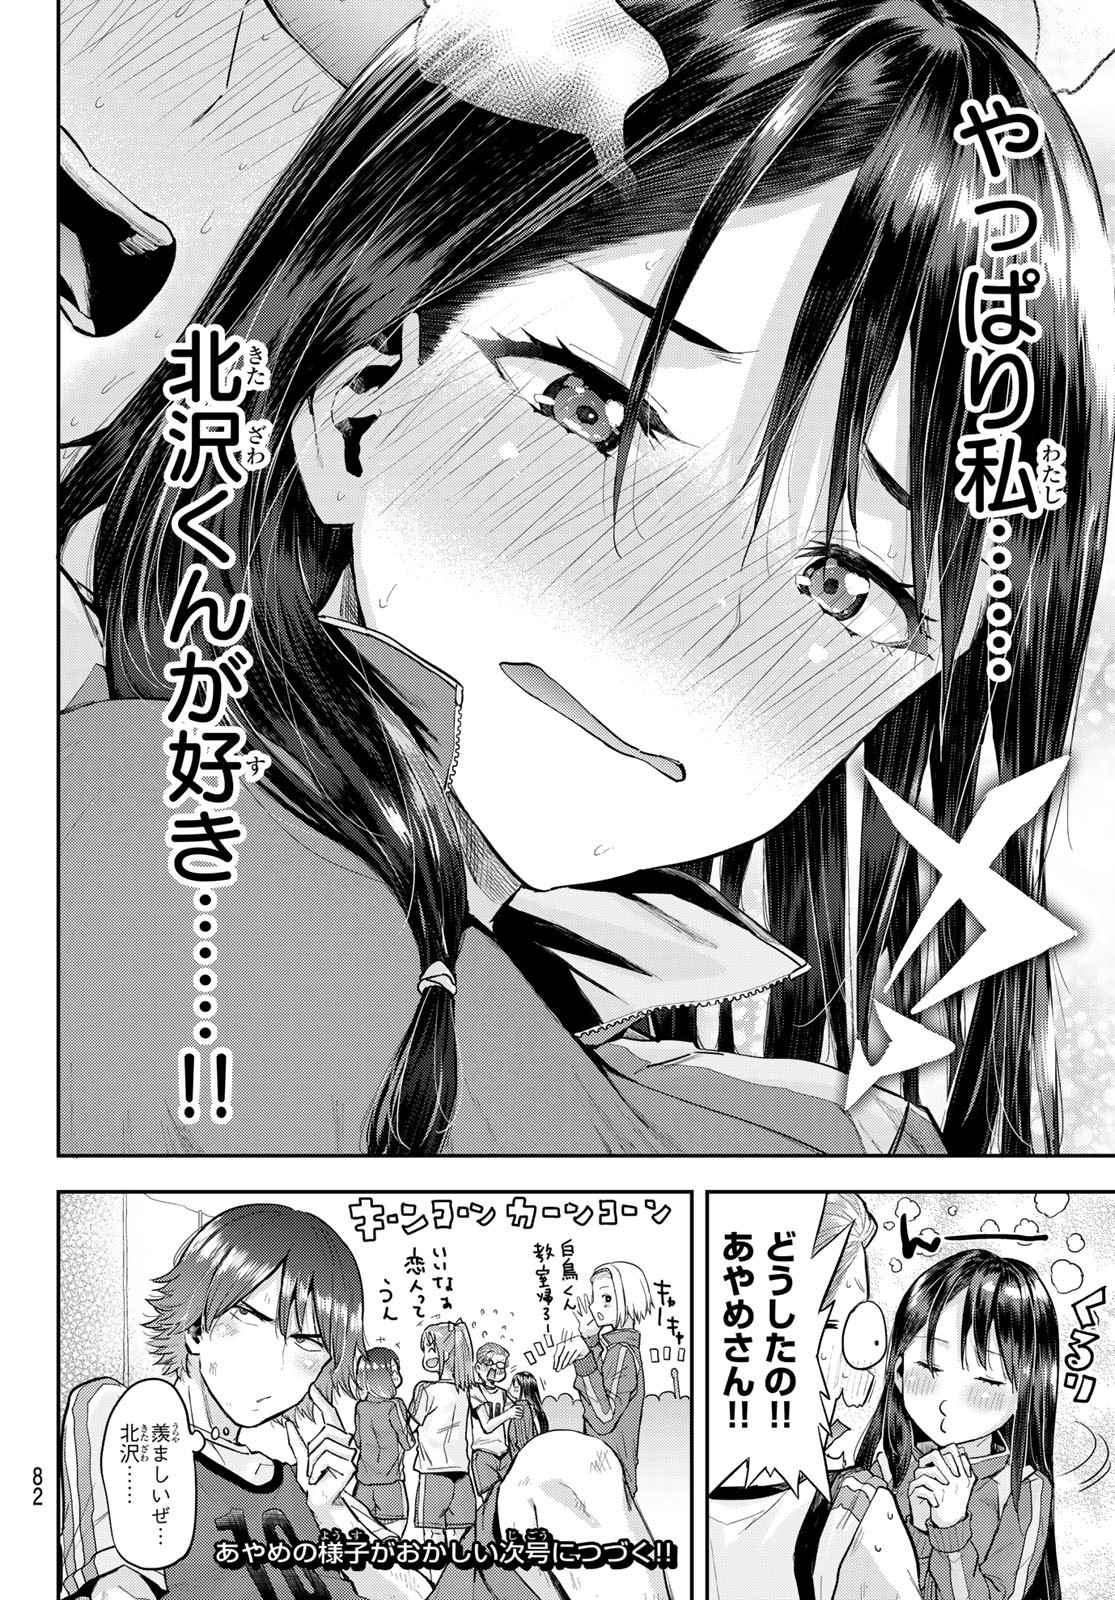 Kitazawa-kun wa A Class - Chapter 005 - Page 24